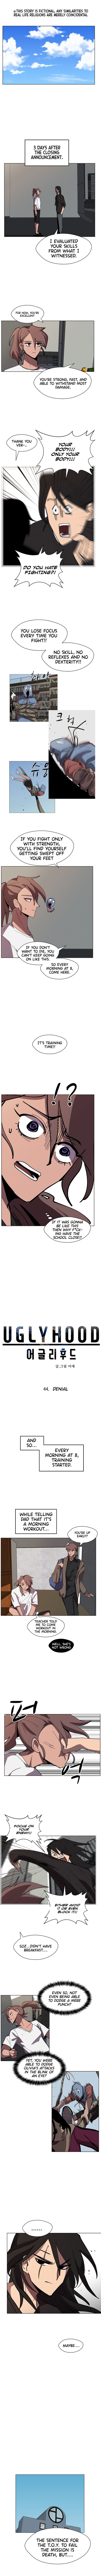 Uglyhood - Page 1